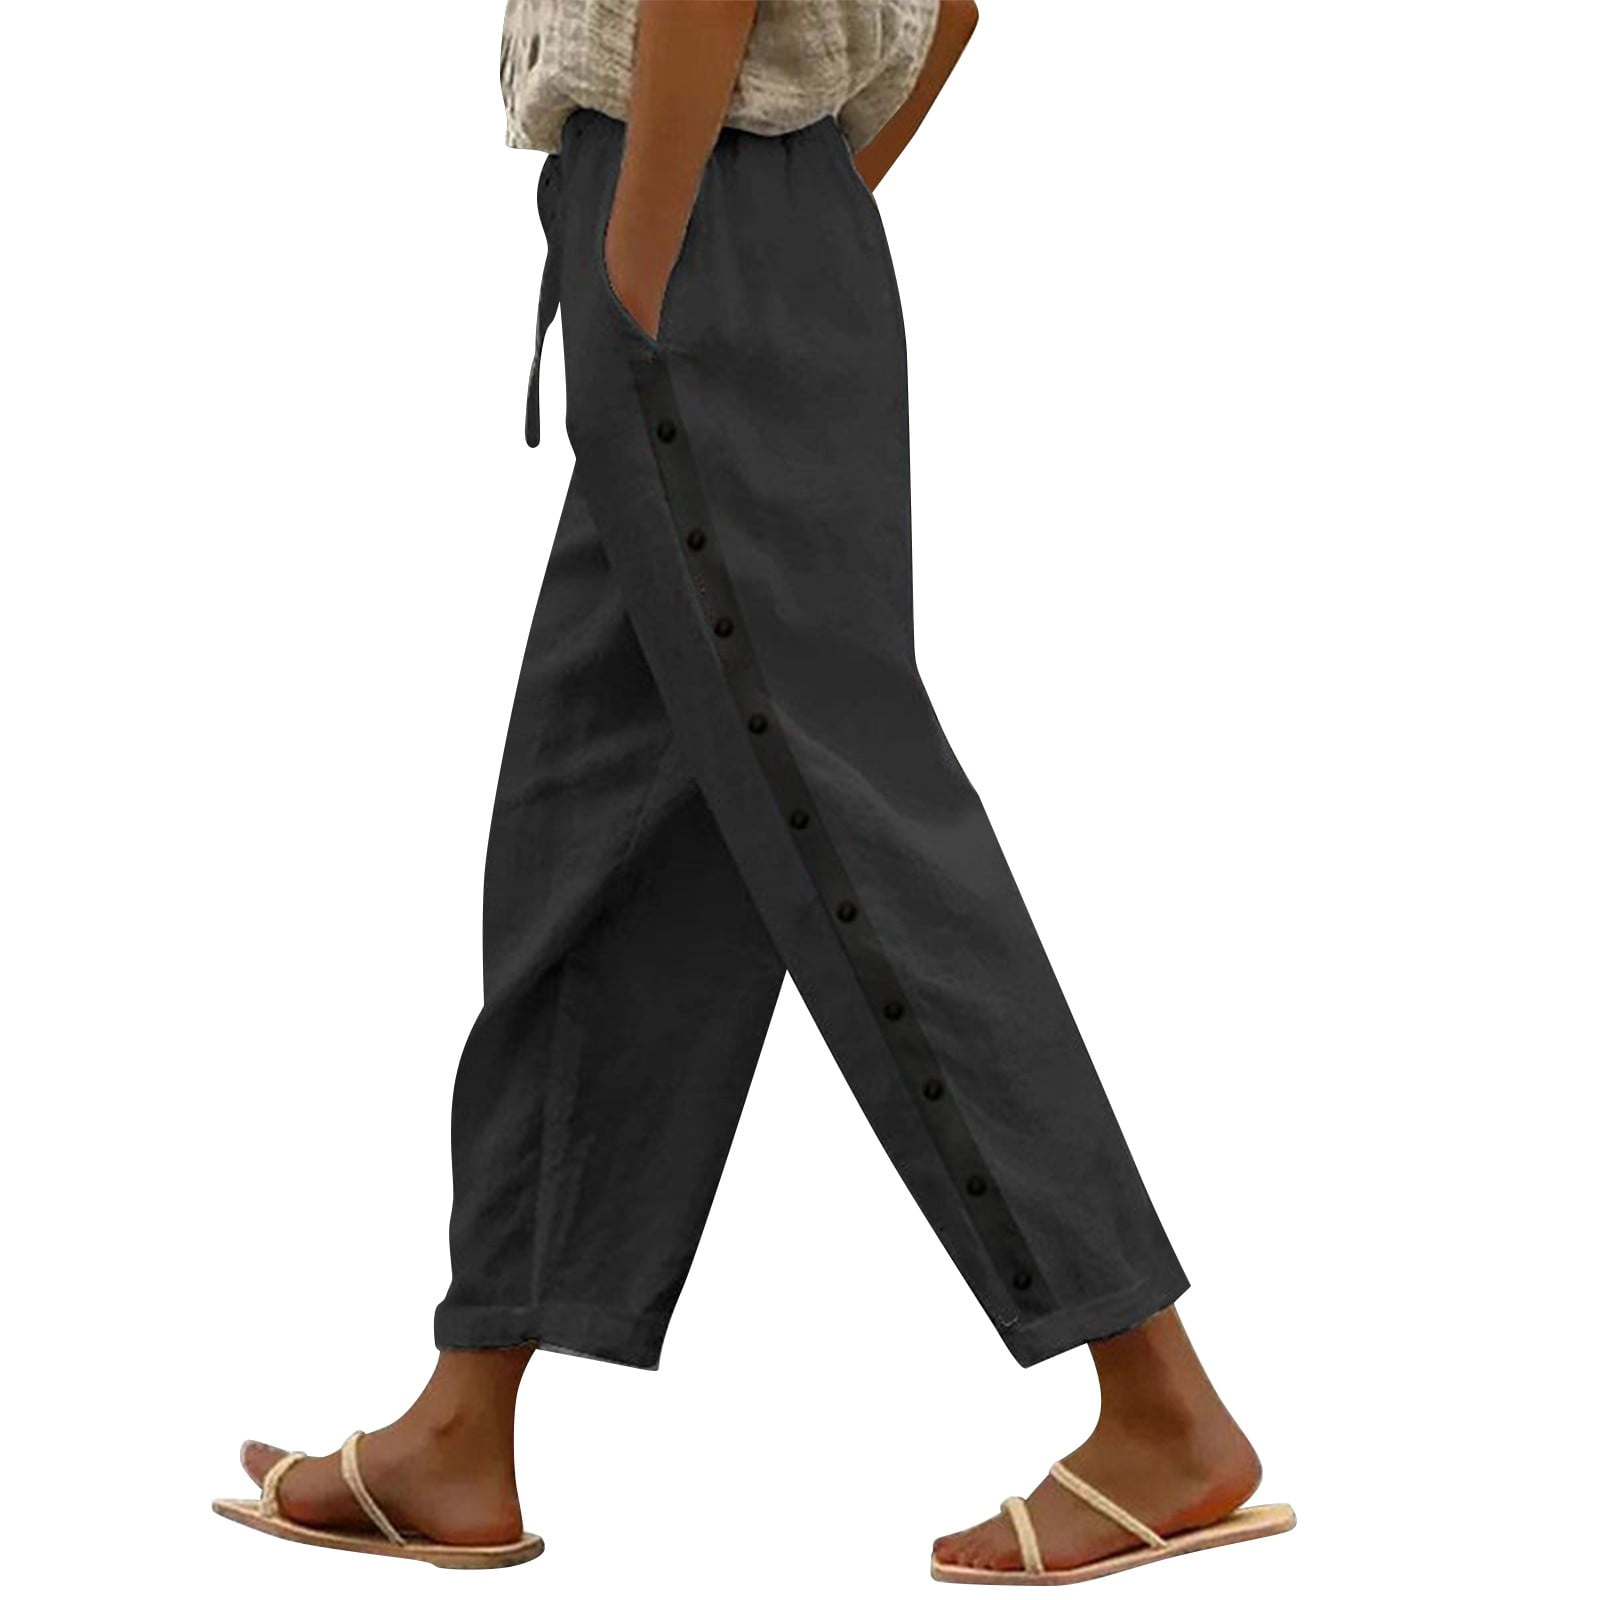 AILIYIL Versatile Pants Women Fashion Solid Color Cotton Flax Elastic ...